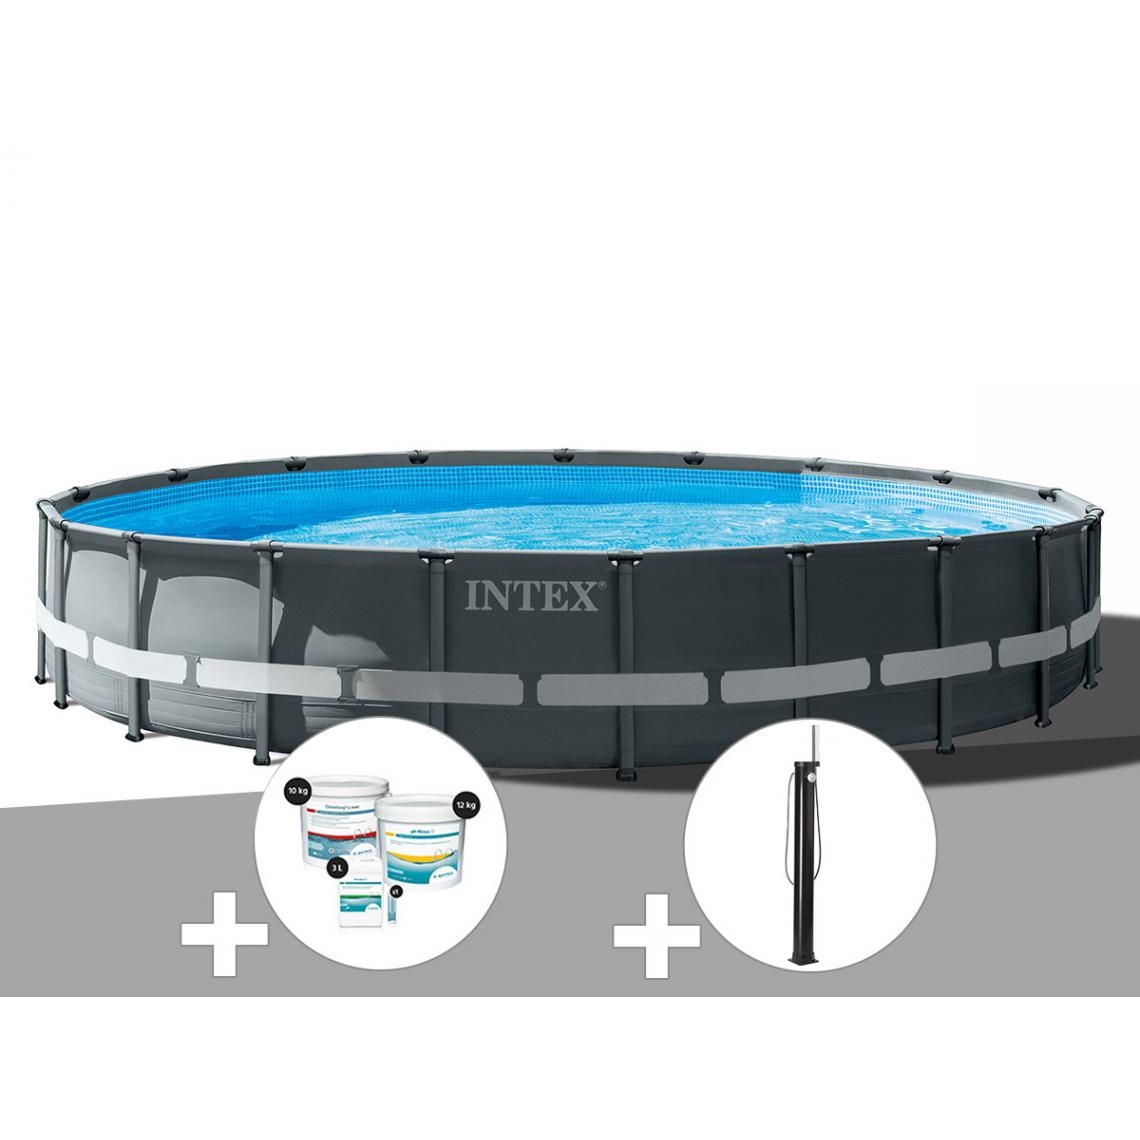 Intex - Kit piscine tubulaire Intex Ultra XTR Frame ronde 6,10 x 1,22 m + Kit de traitement au chlore + Douche solaire - Piscine Tubulaire